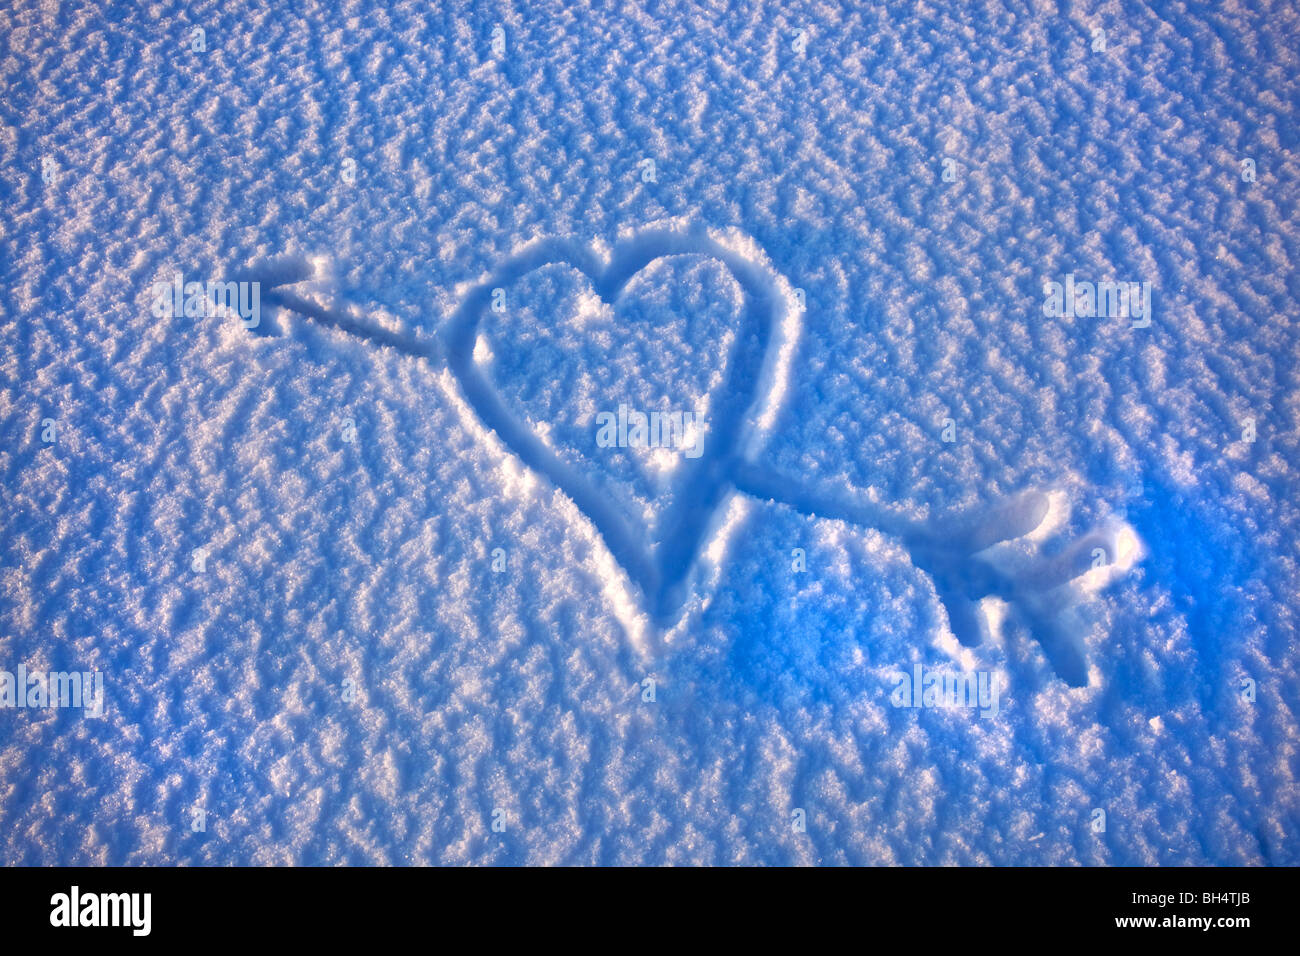 Un coeur d'amour avec la flèche de Cupidon à travers elle dessiné dans la neige Banque D'Images